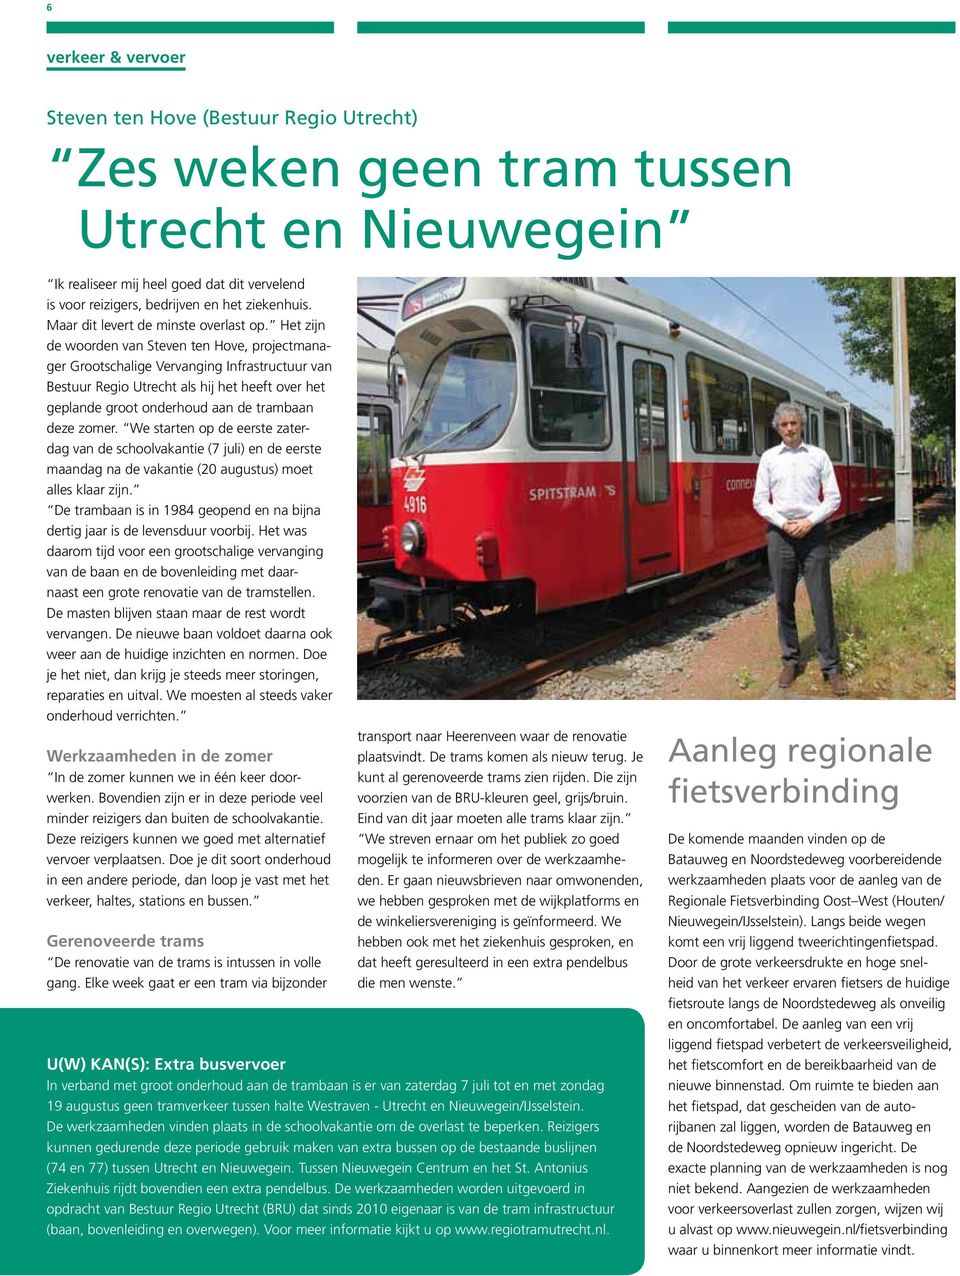 Het zijn de woorden van Steven ten Hove, projectmanager Grootschalige Vervanging Infrastructuur van Bestuur Regio Utrecht als hij het heeft over het geplande groot onderhoud aan de trambaan deze